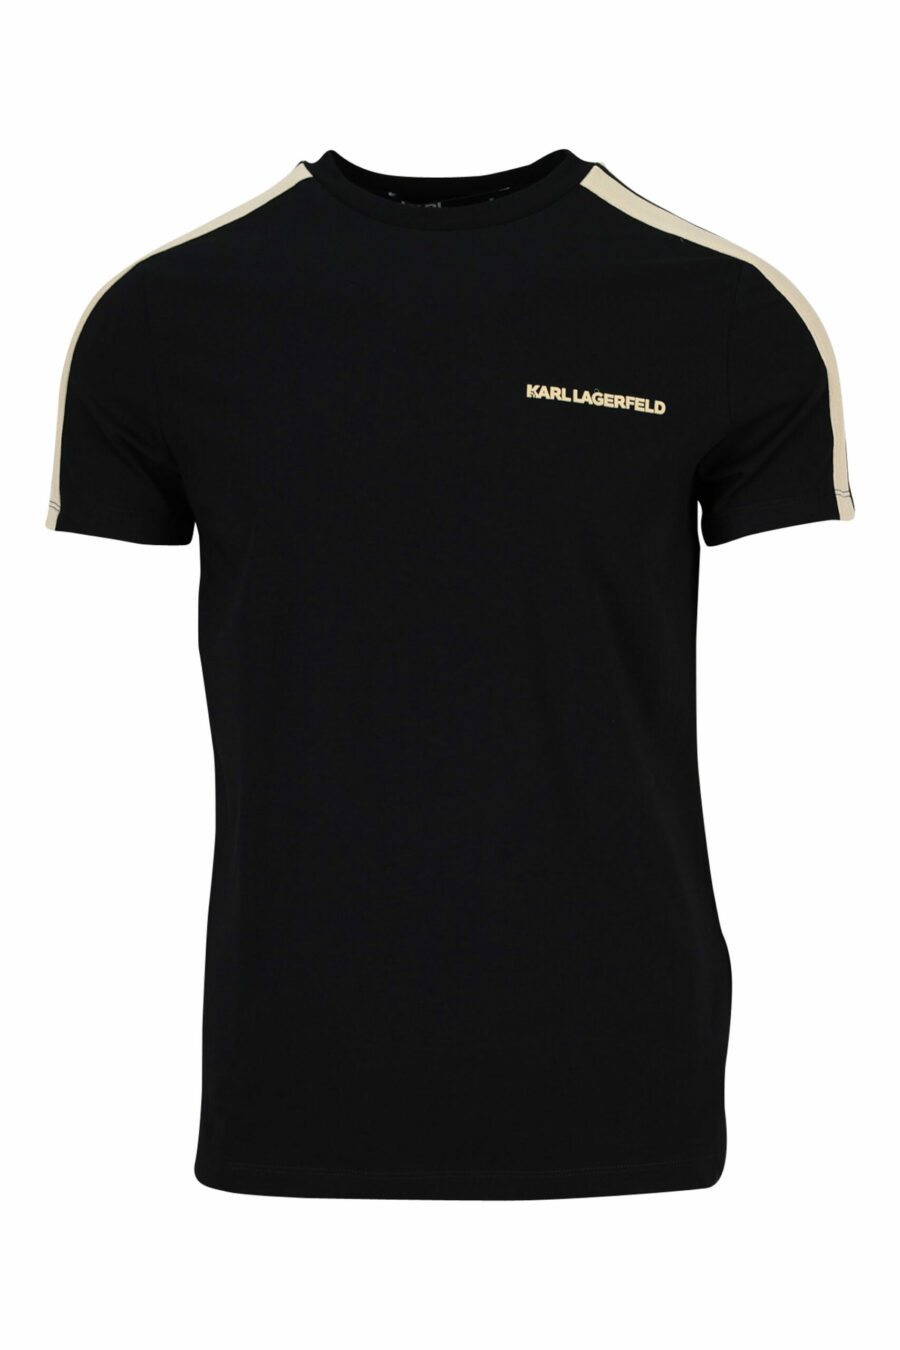 Schwarzes T-Shirt mit miniloguen und beigen Seitenstreifen - 4062226401746 skaliert